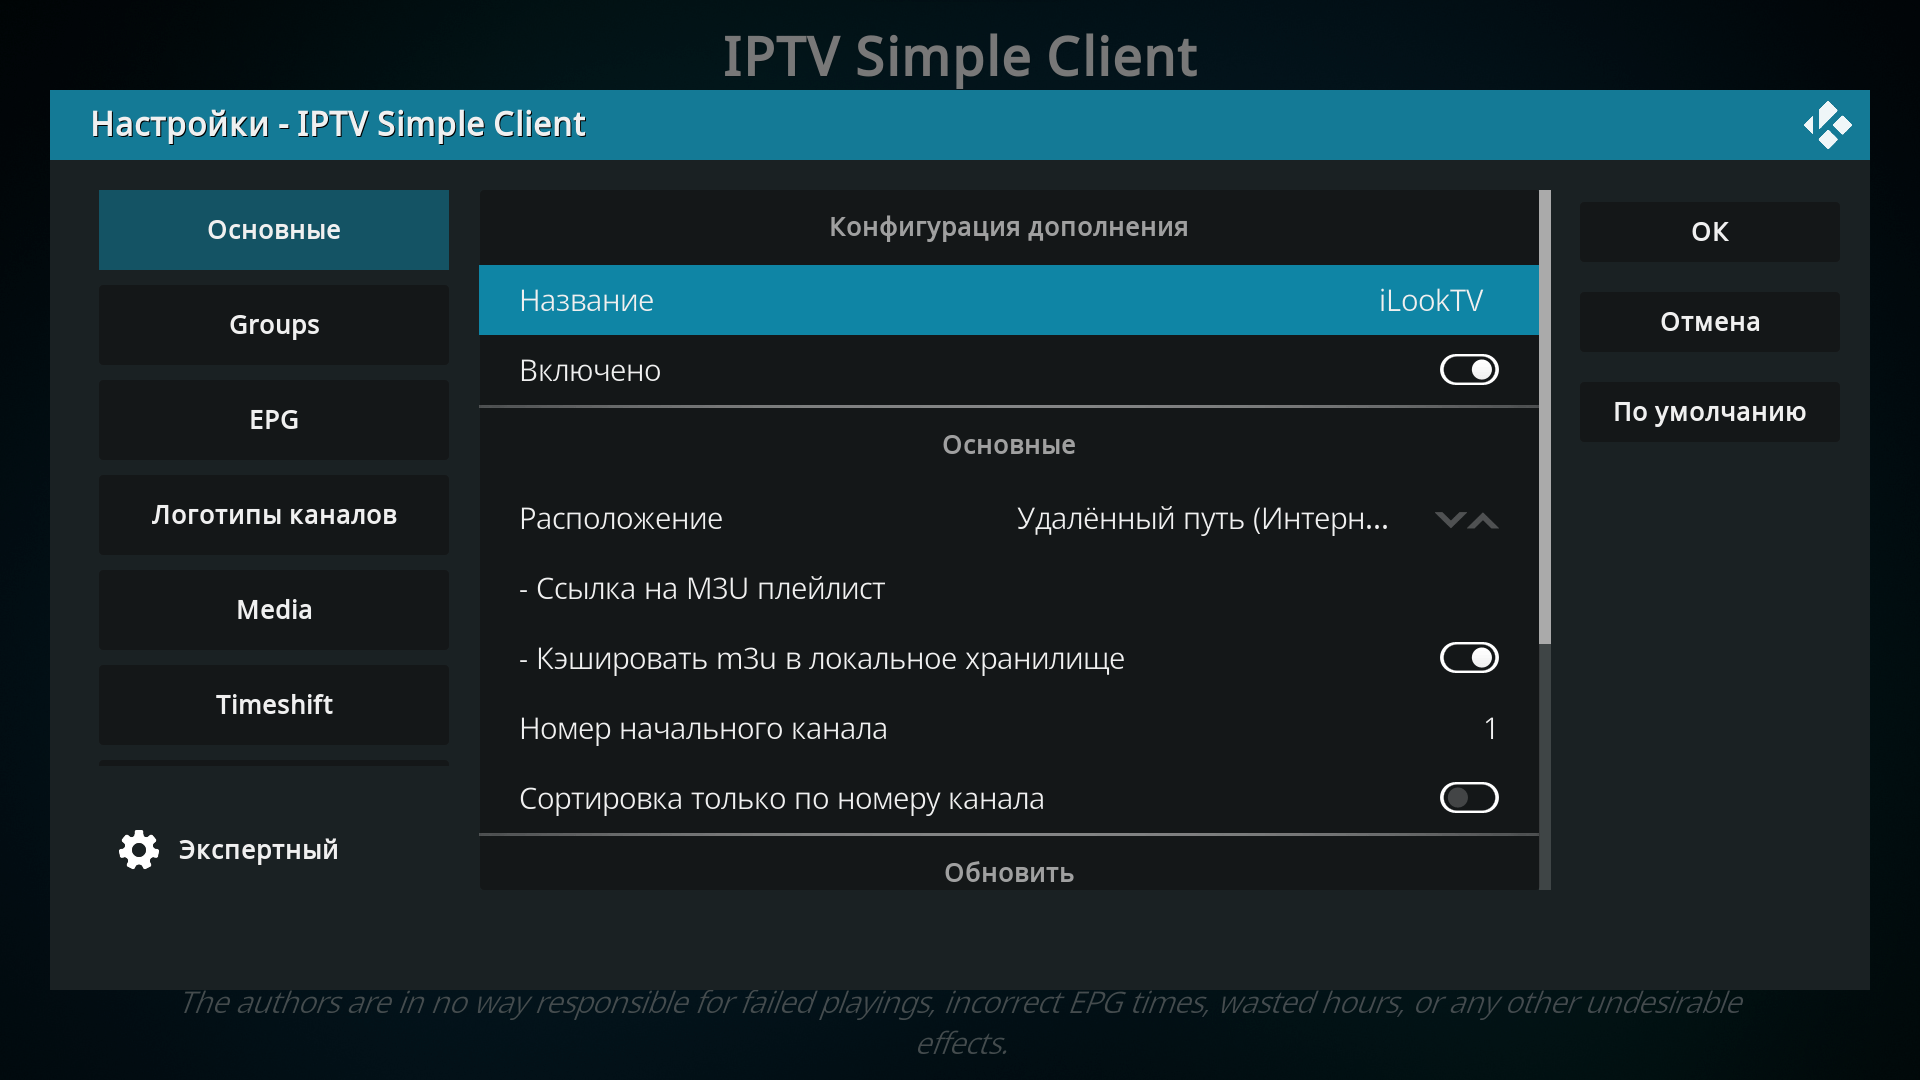 Название IPTV-провайдера